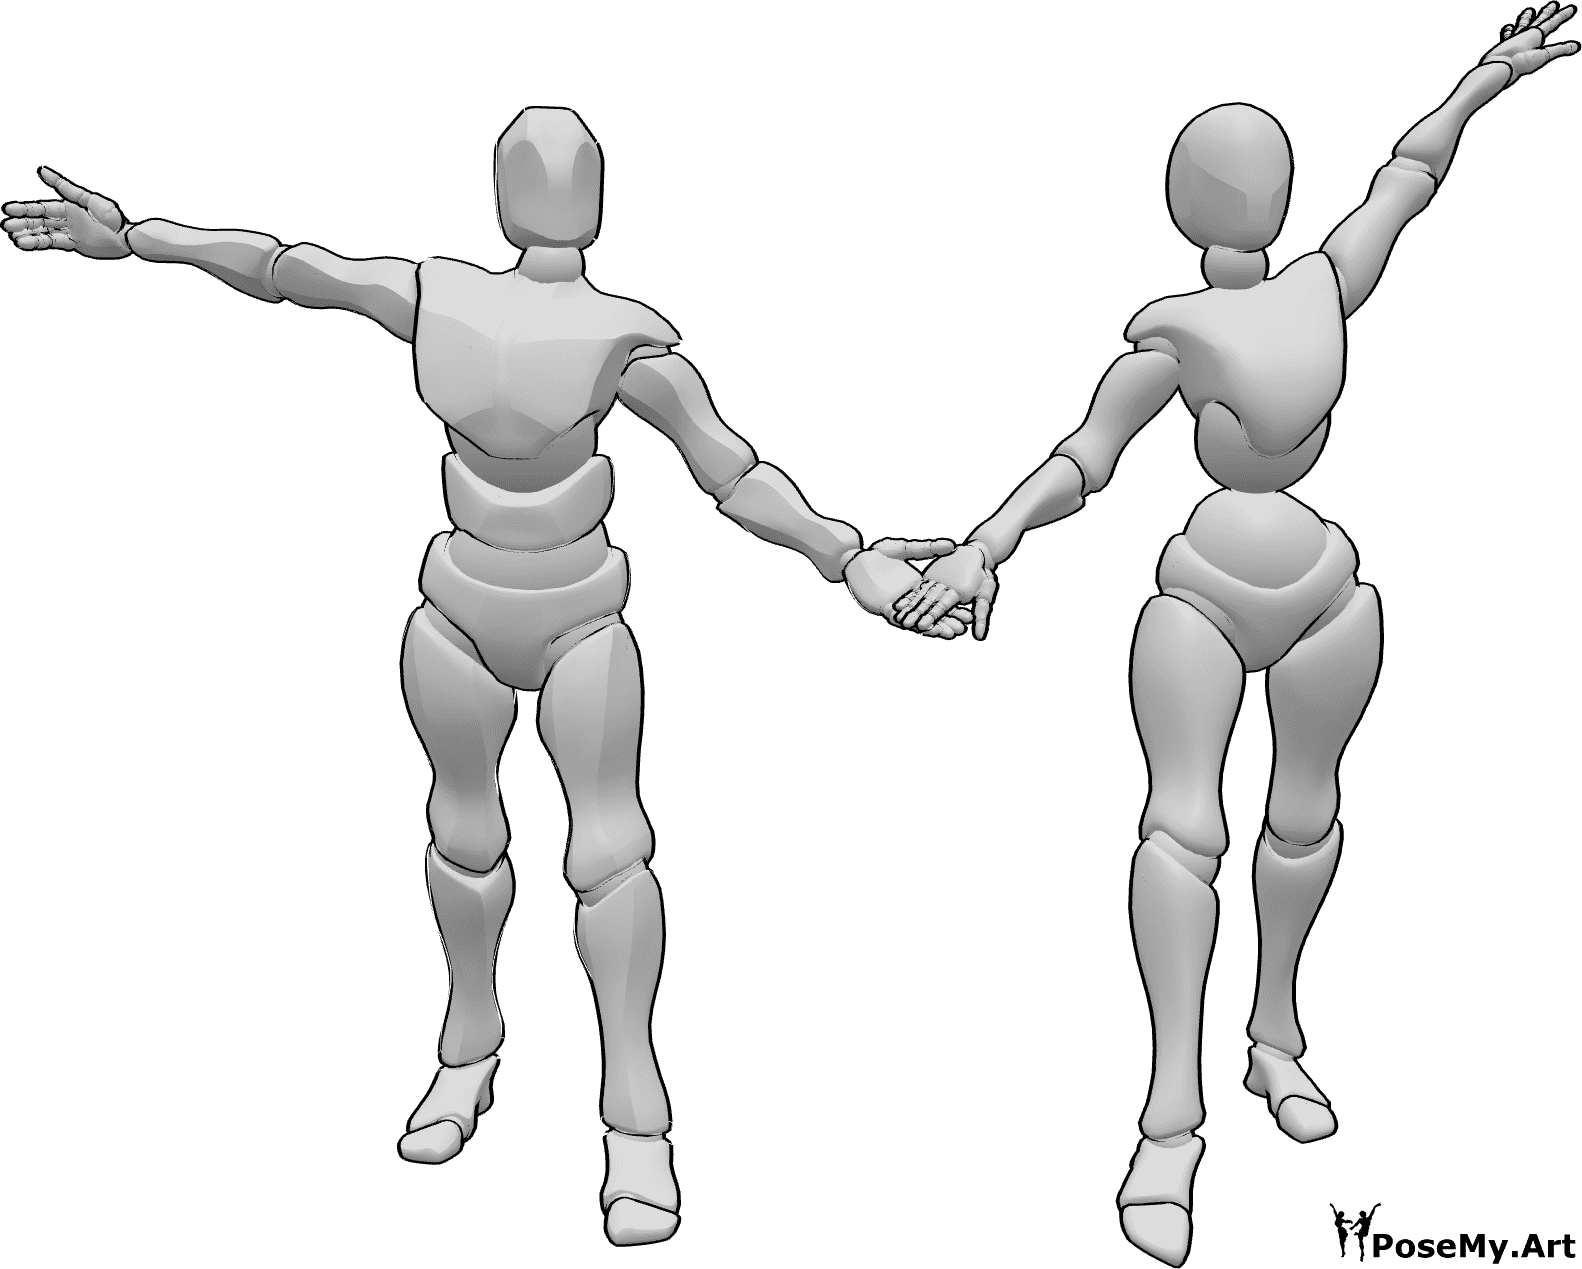 Posen-Referenz- Tanzduo Verbeugungspose - Weiblich und männlich verbeugen sich gemeinsam nach einer Tanzpose